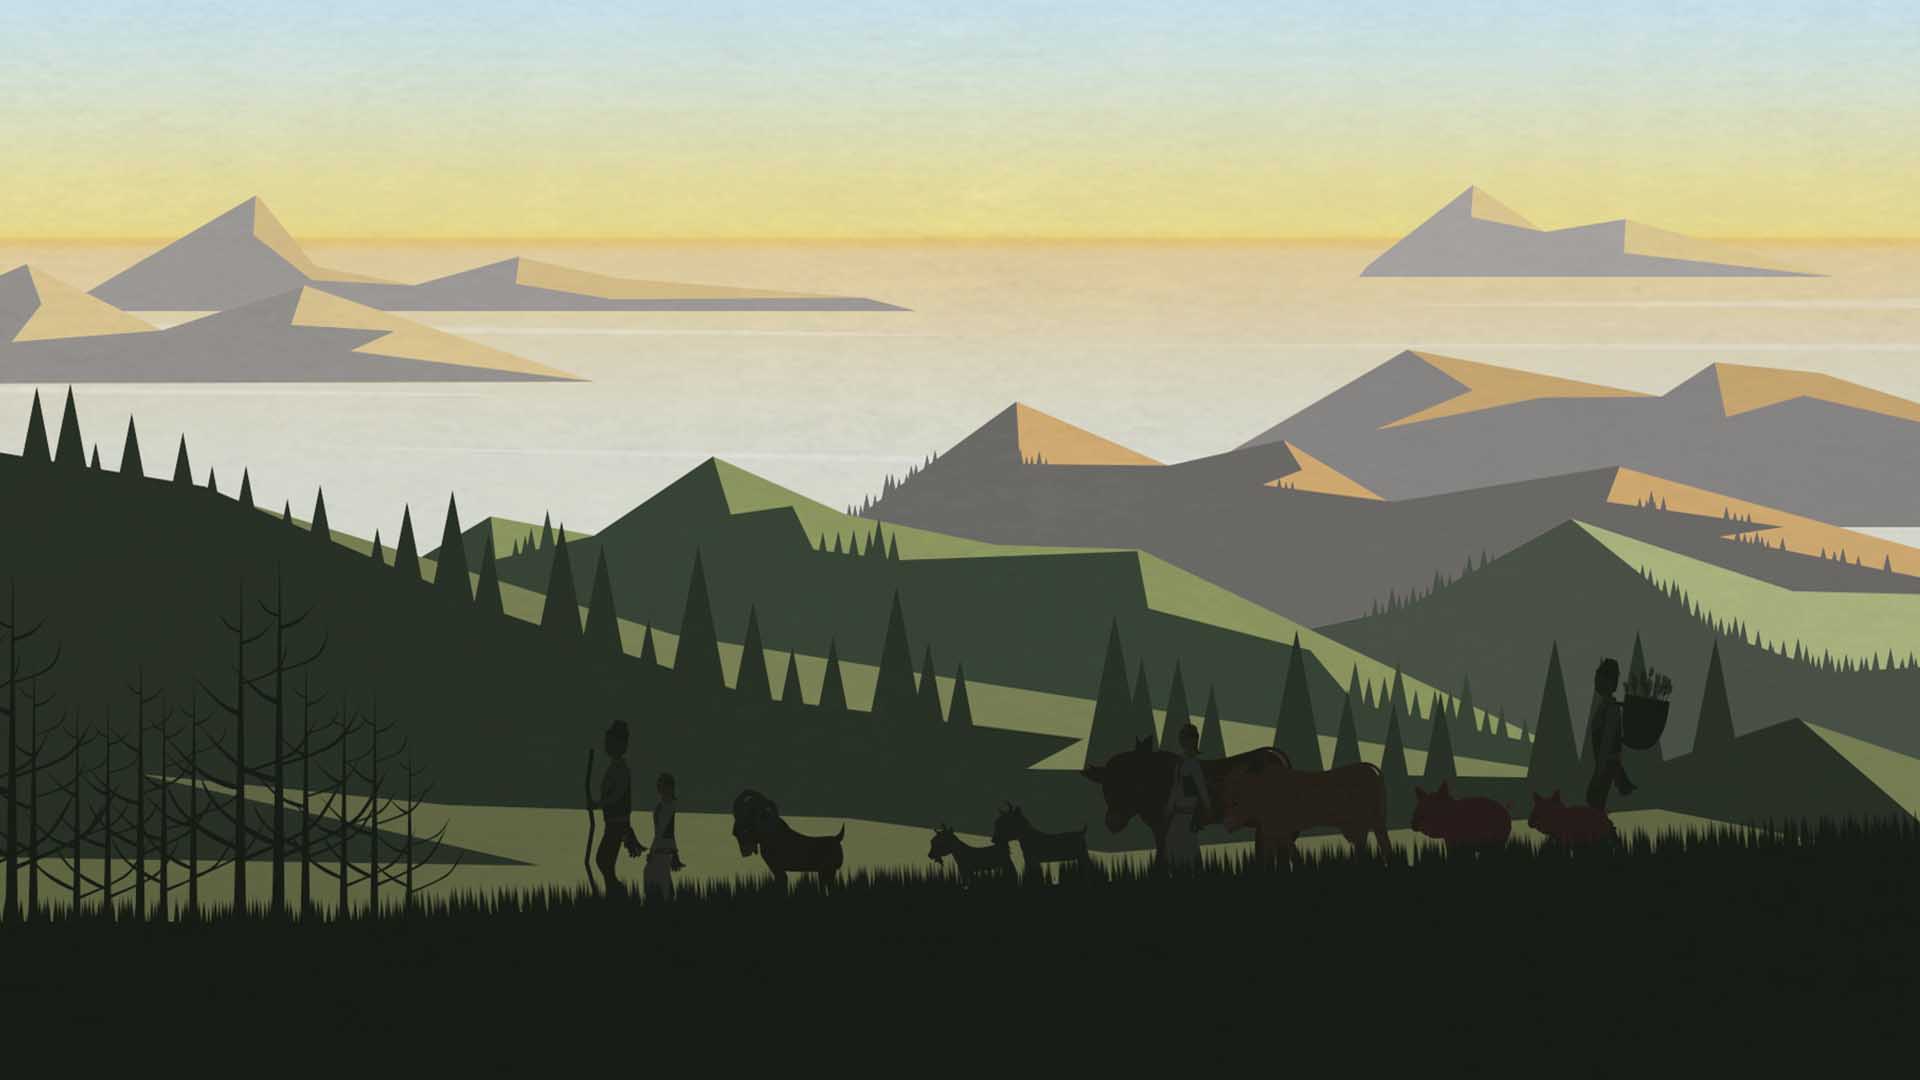 Das Bild zeigt Wälder und Berge. Am Horizont spiegelt sich der Sonnenuntergang im Meer. Im Vordergrund des Bildes werden Menschen von einer Herde Tiere begleitet. Das Bild dient als Sliderbild für den Portfolioeintrag Region Passau Comics Mitmachstation von Panda Pictures.